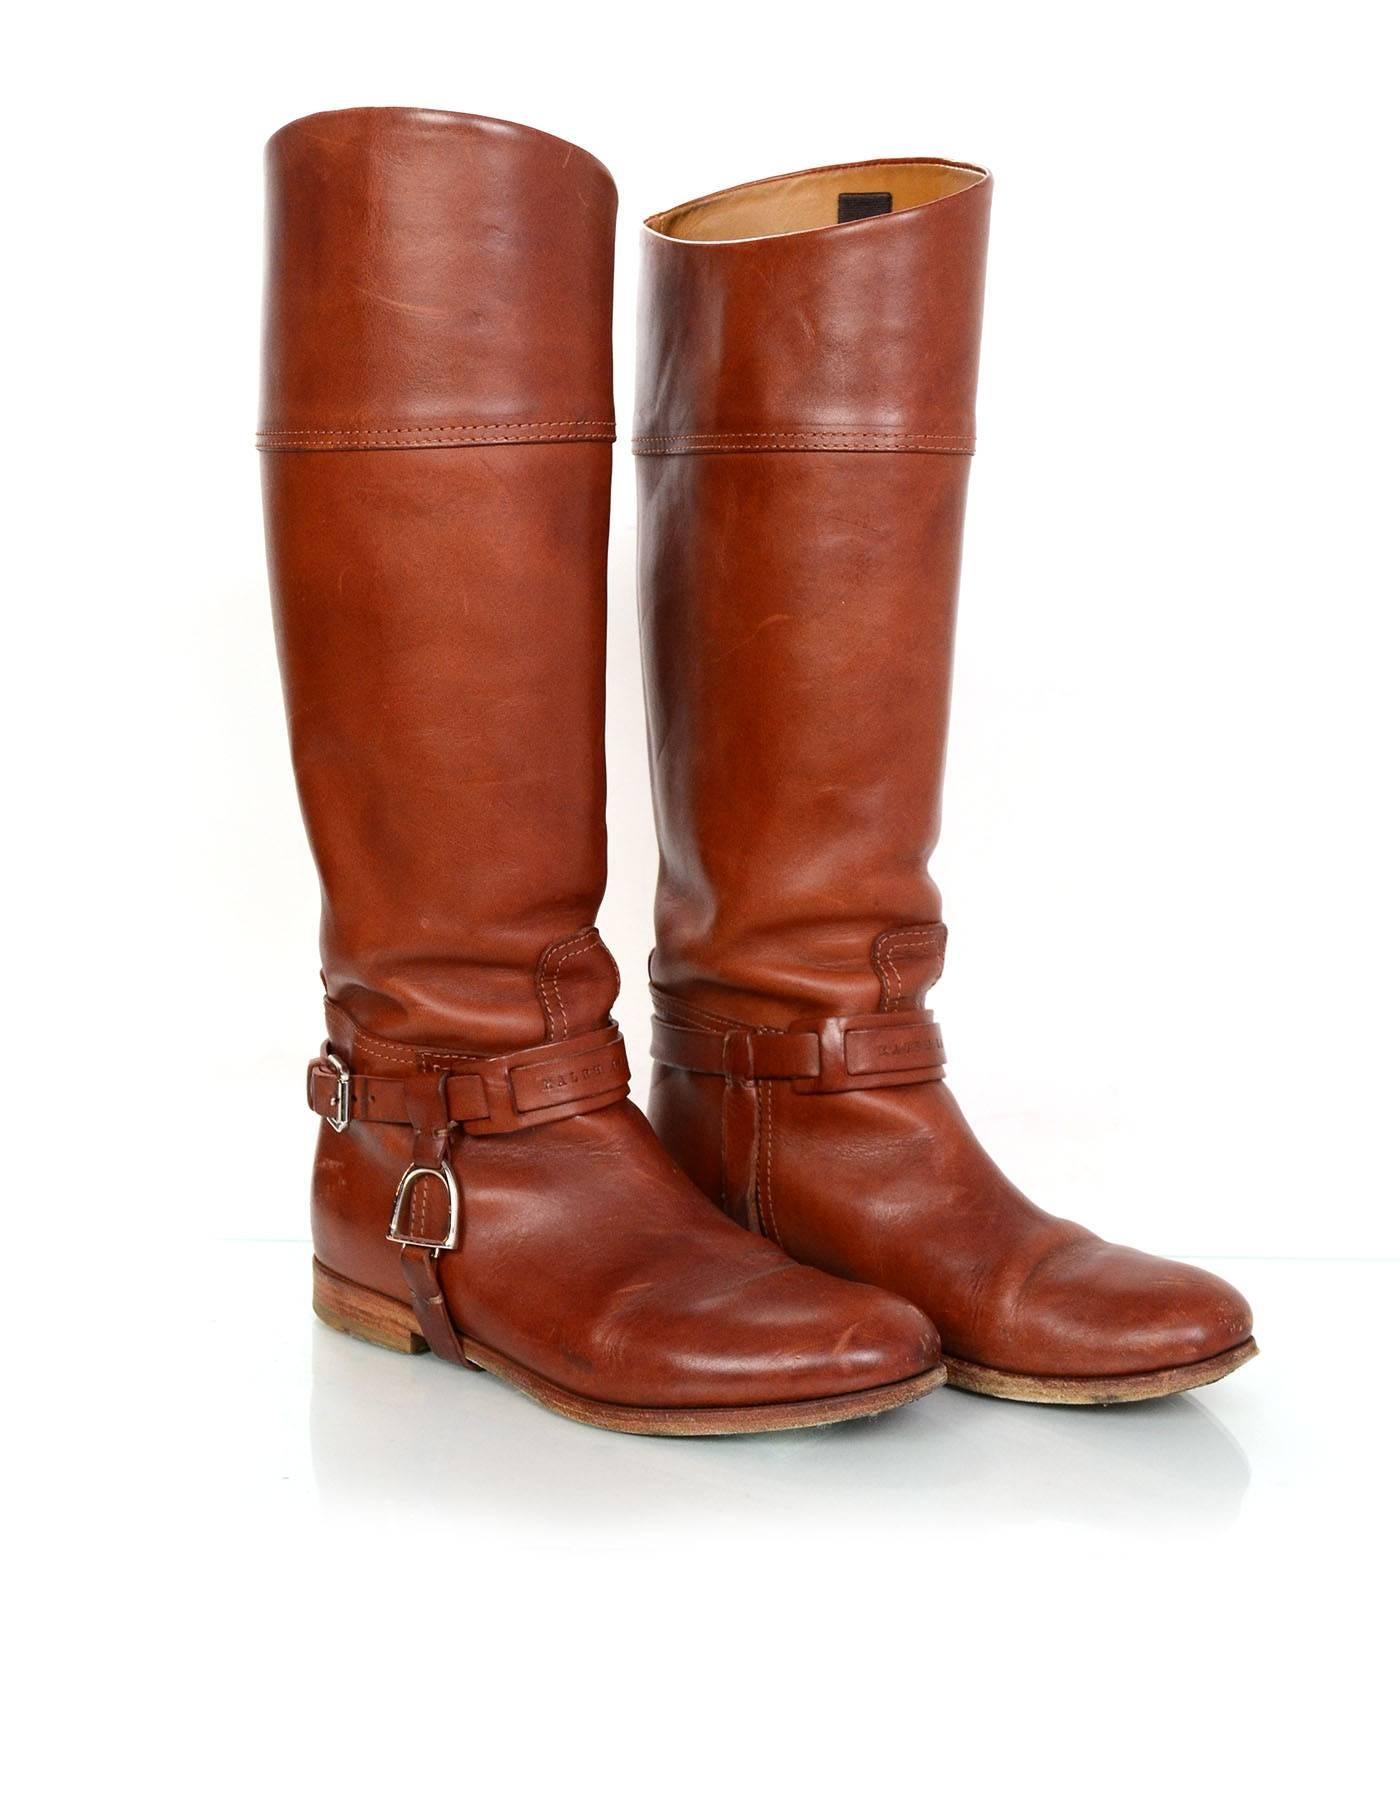 Brown Ralph Lauren Cognac Leather Riding Boots Sz 6.5